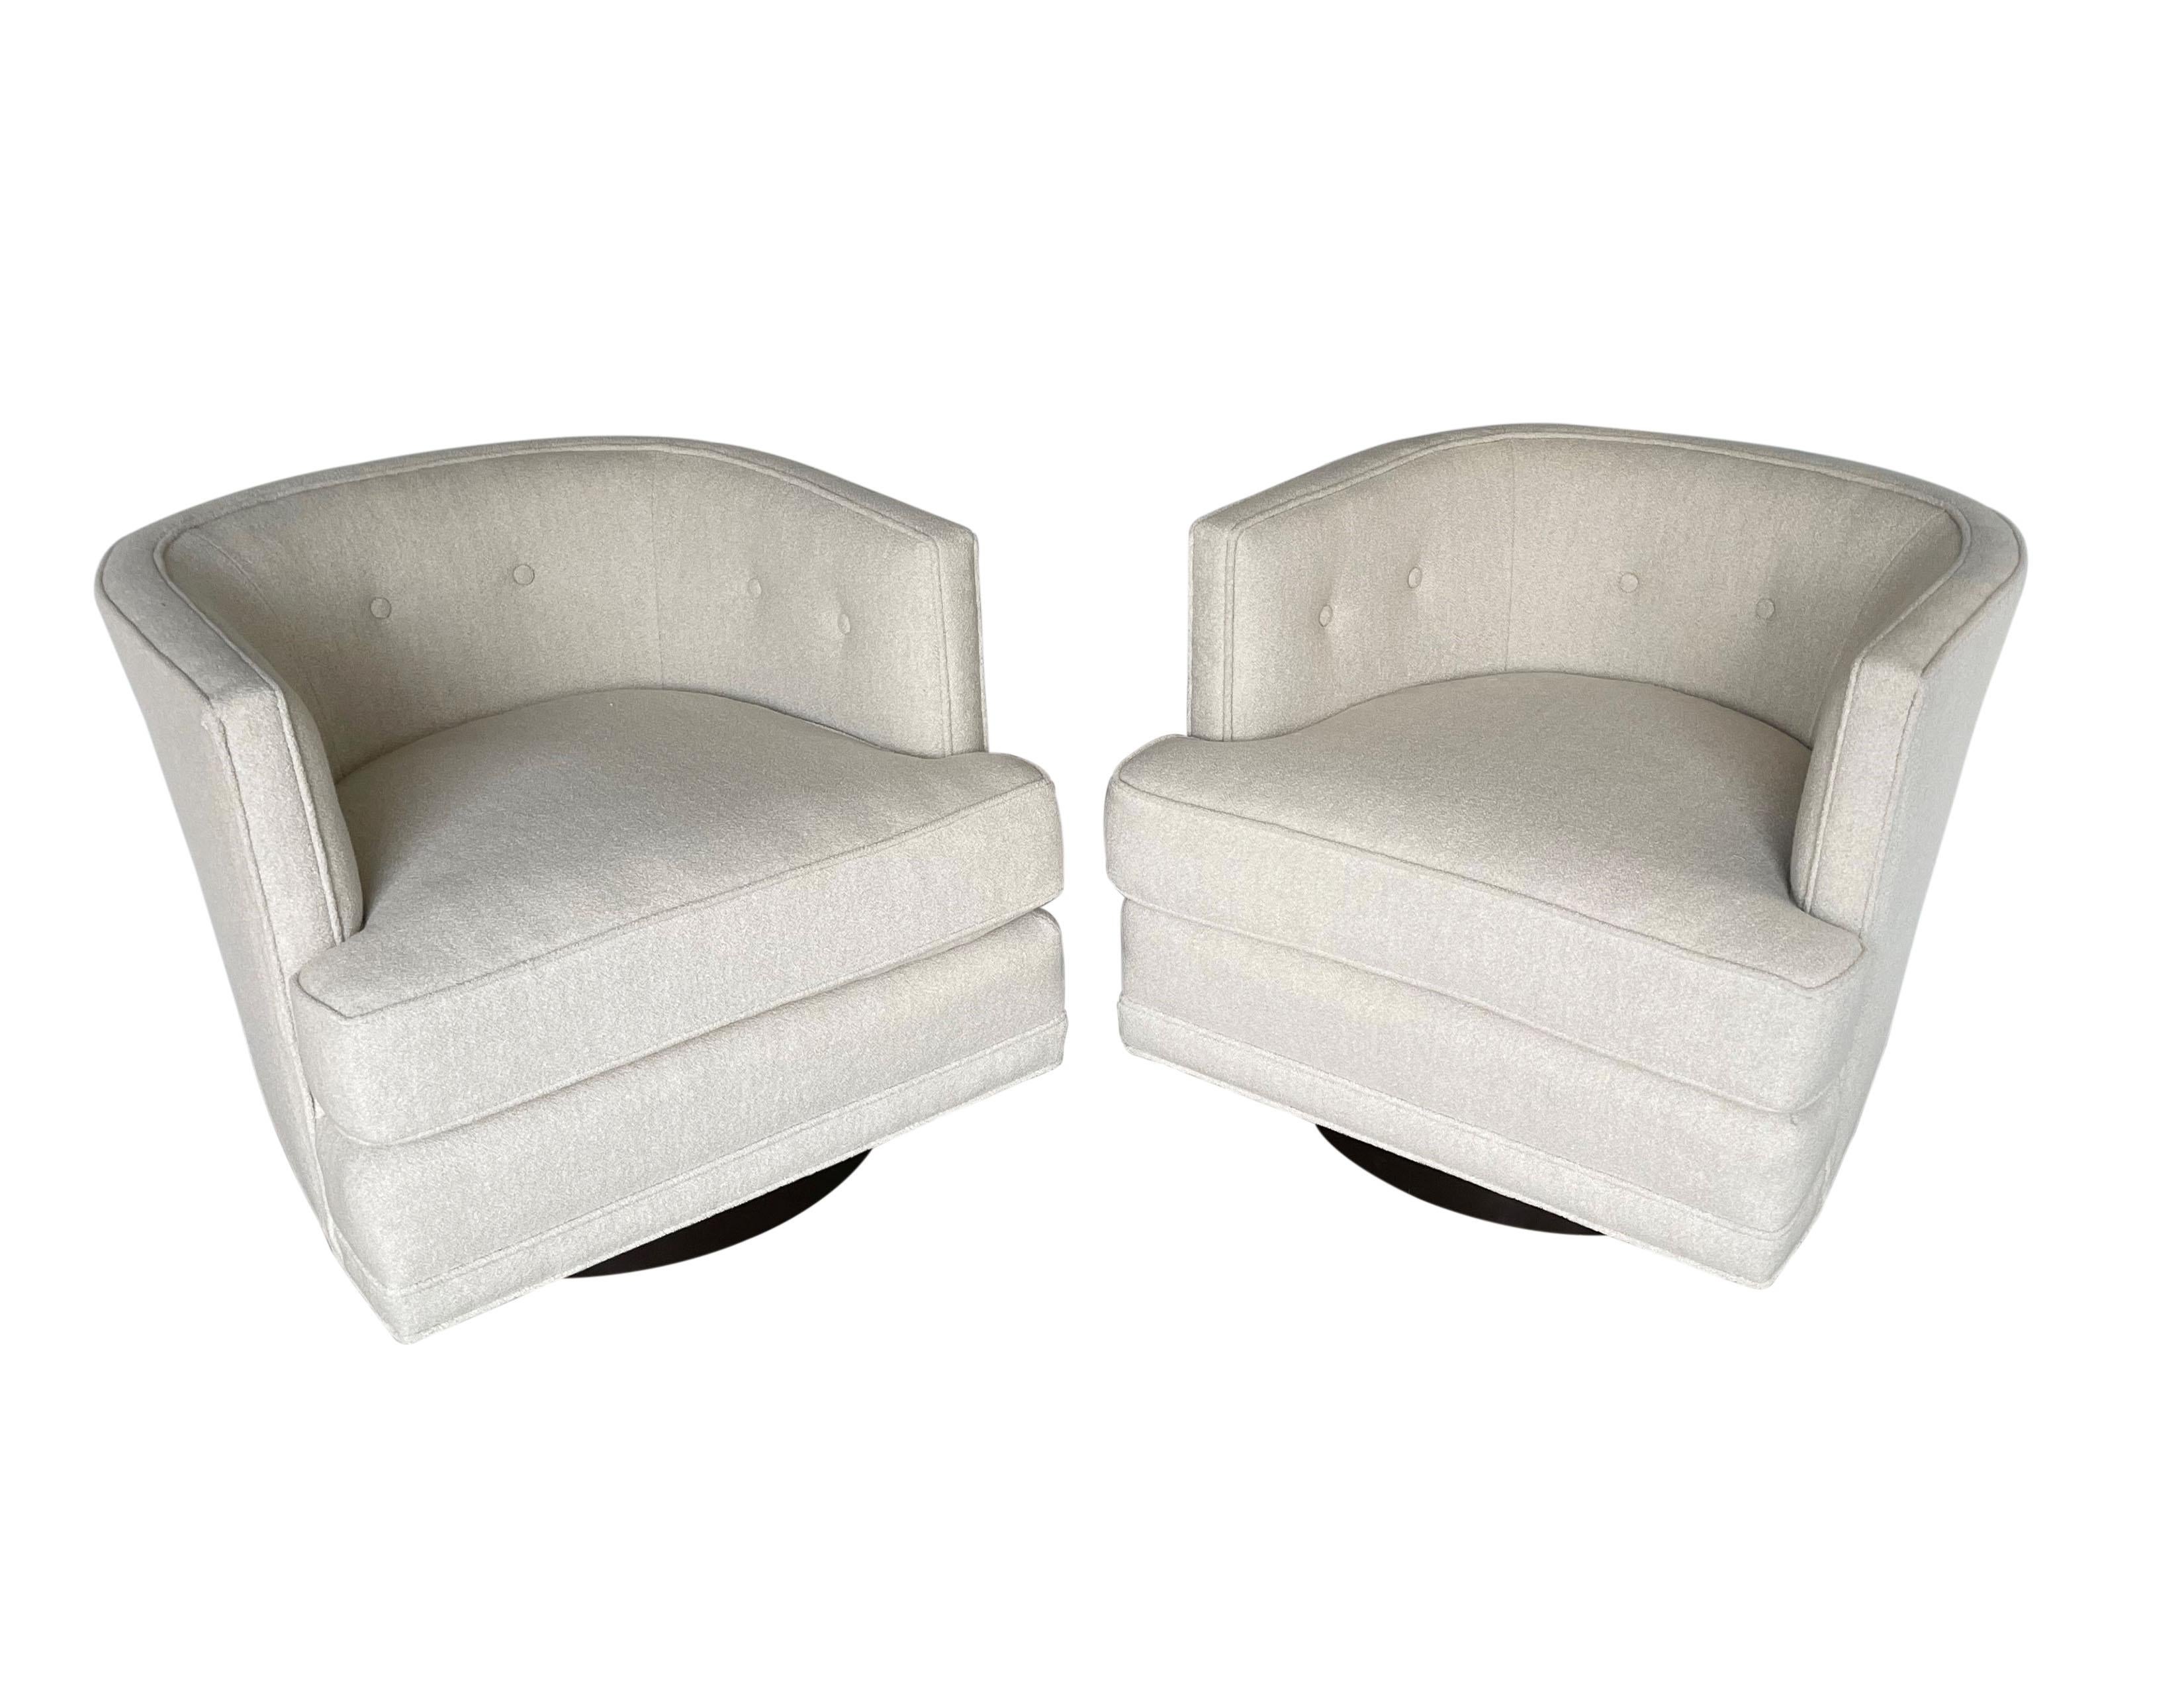 Retro-Glamour trifft auf modernen Komfort - zwei drehbare Loungesessel, die Harvey Probber zugeschrieben werden. Die makellos geschneiderten Stühle verfügen über eine getuftete Rückenlehne, die für eine gemütliche Umarmung sorgt, übergroße,